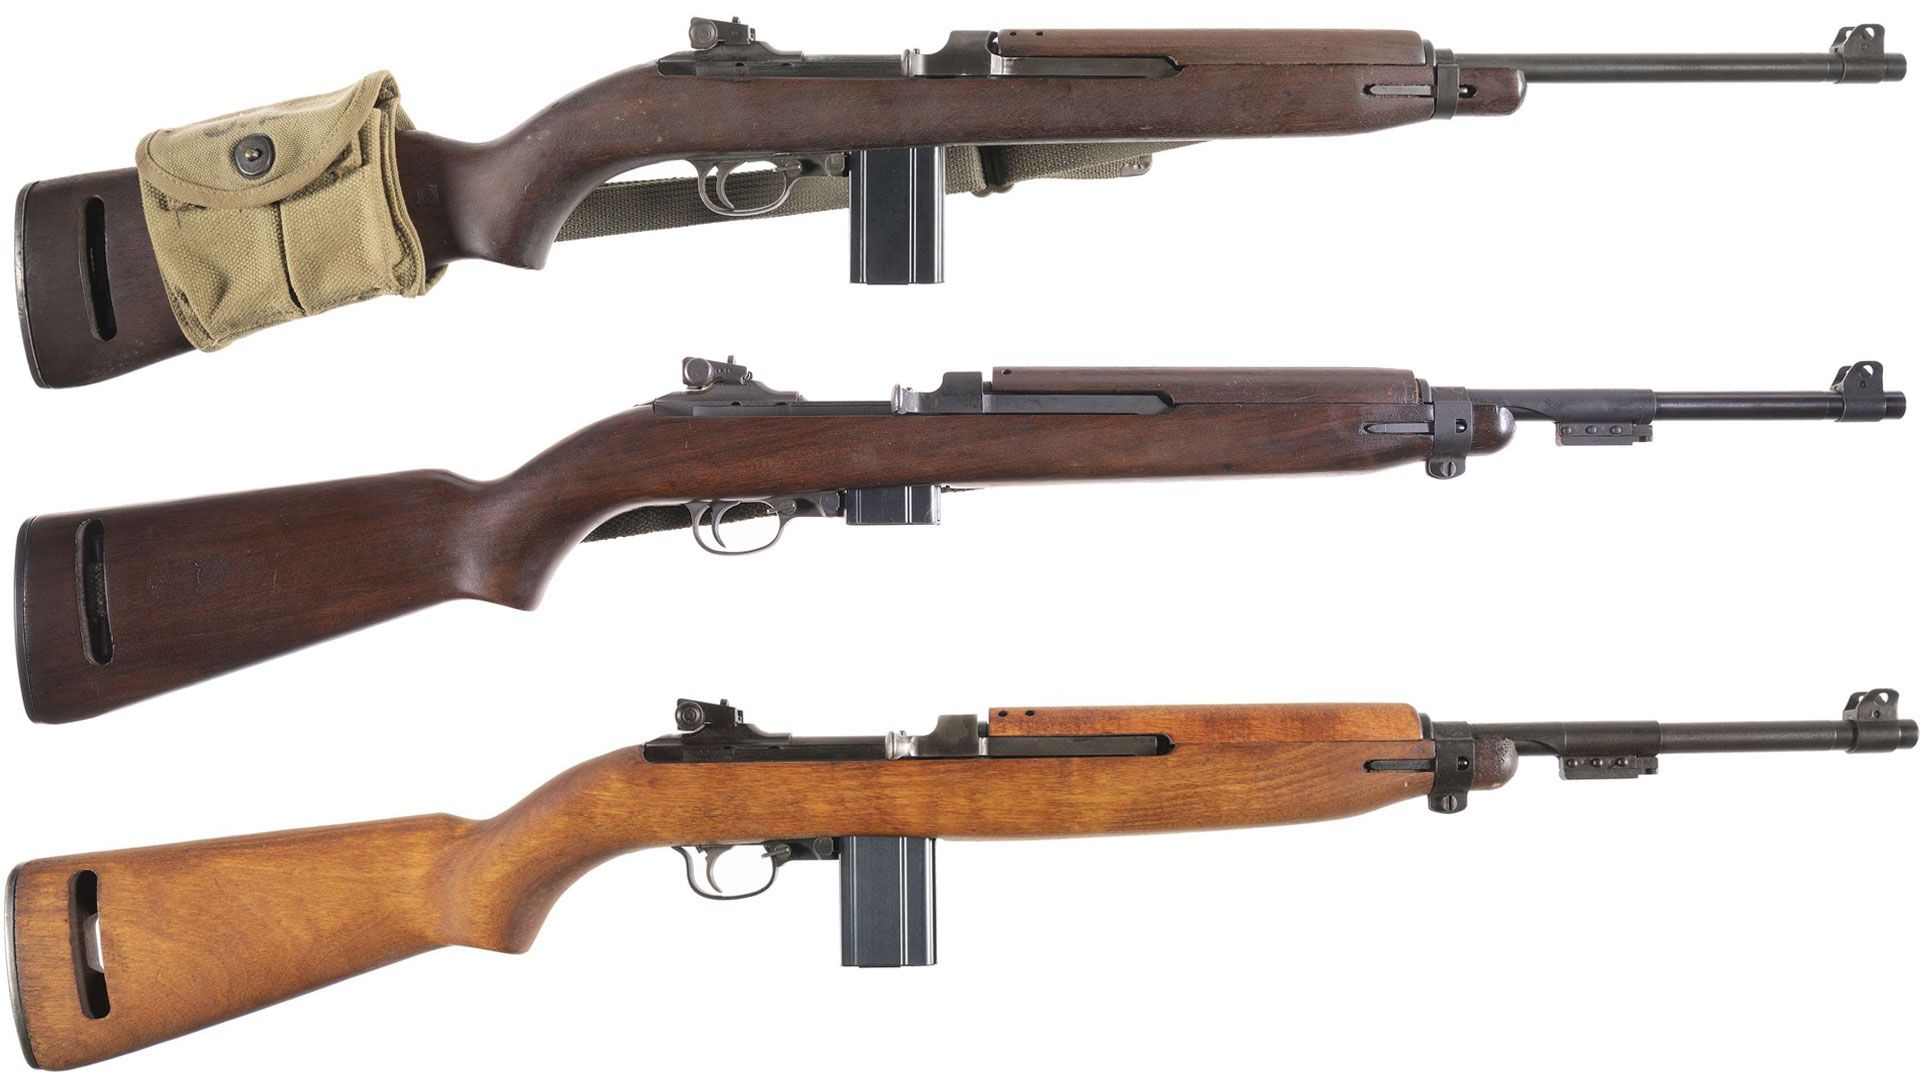 IBM-rifles